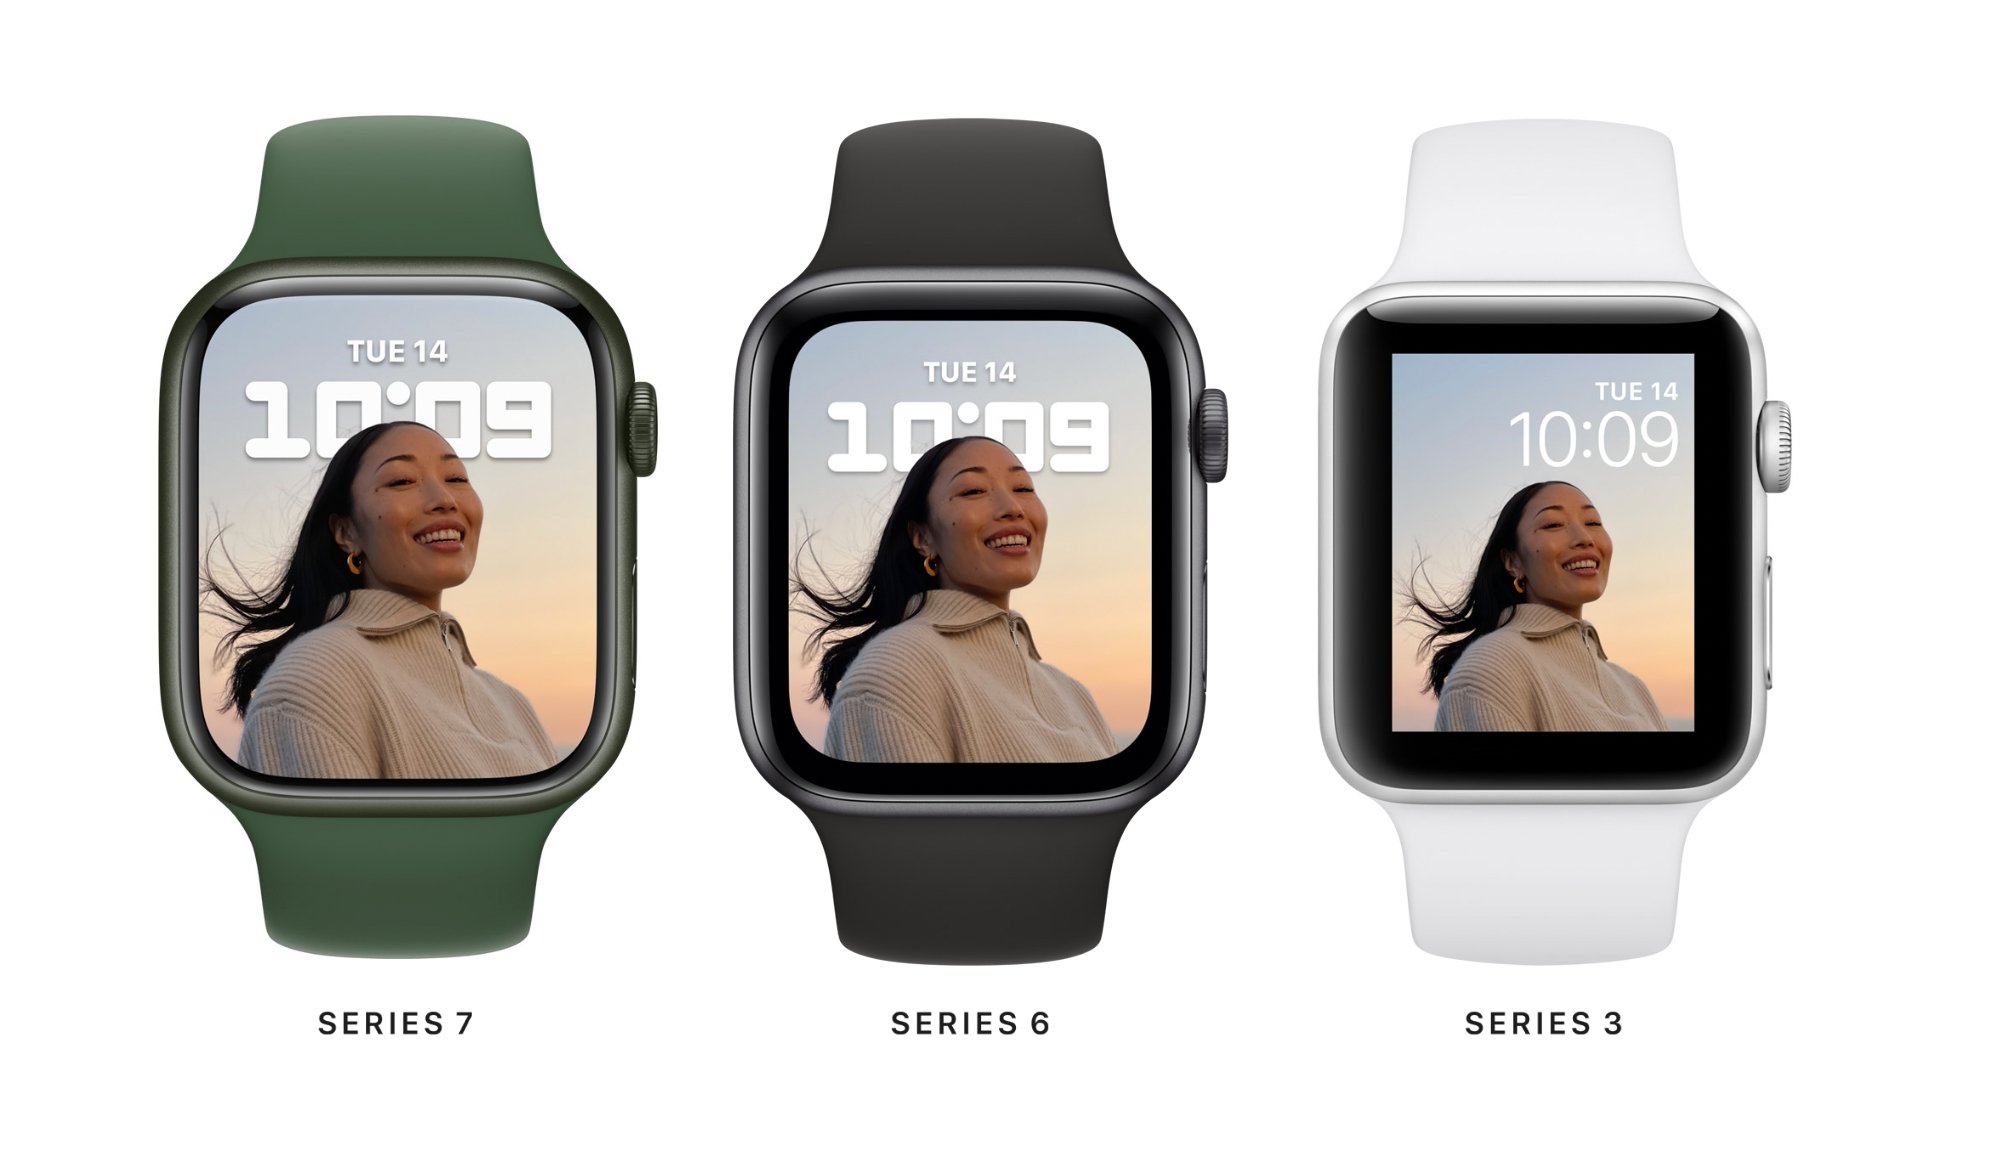 Hướng dẫn cách sử dụng ứng dụng Memoji trên Apple Watch đơn giản   Thegioididongcom